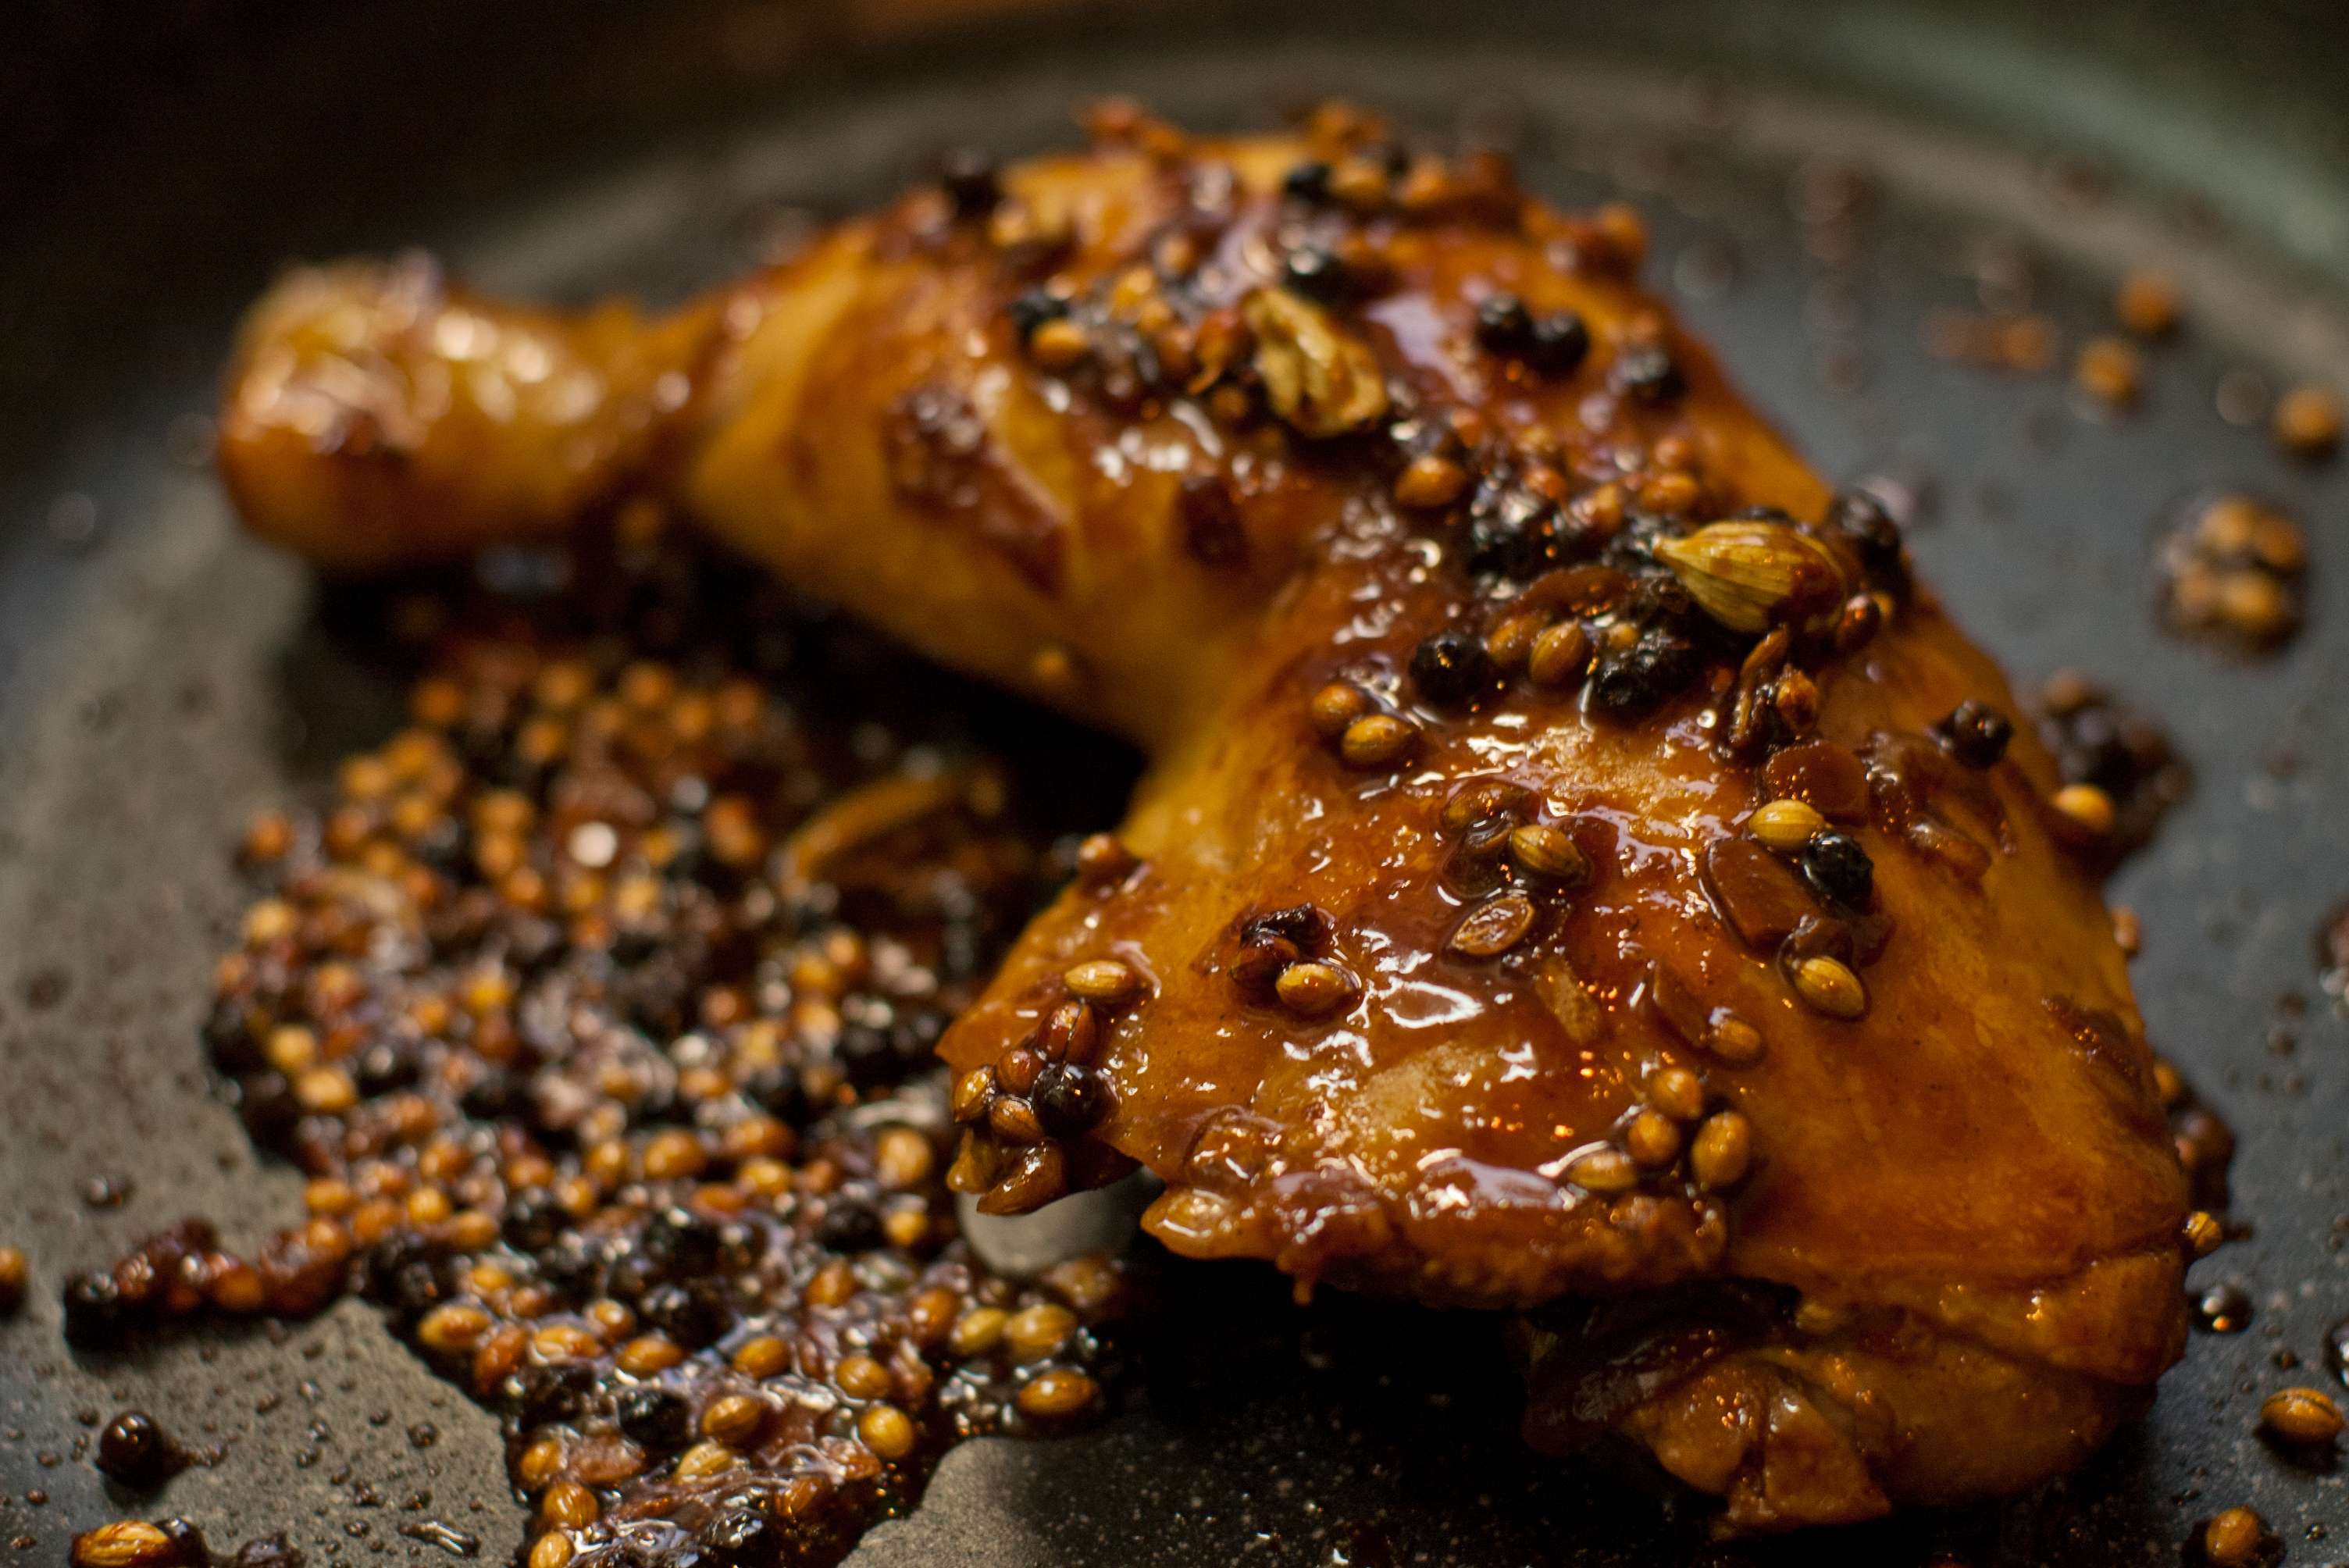 【レシピ】骨付き鶏肉の照り焼き*ニンニク醤油